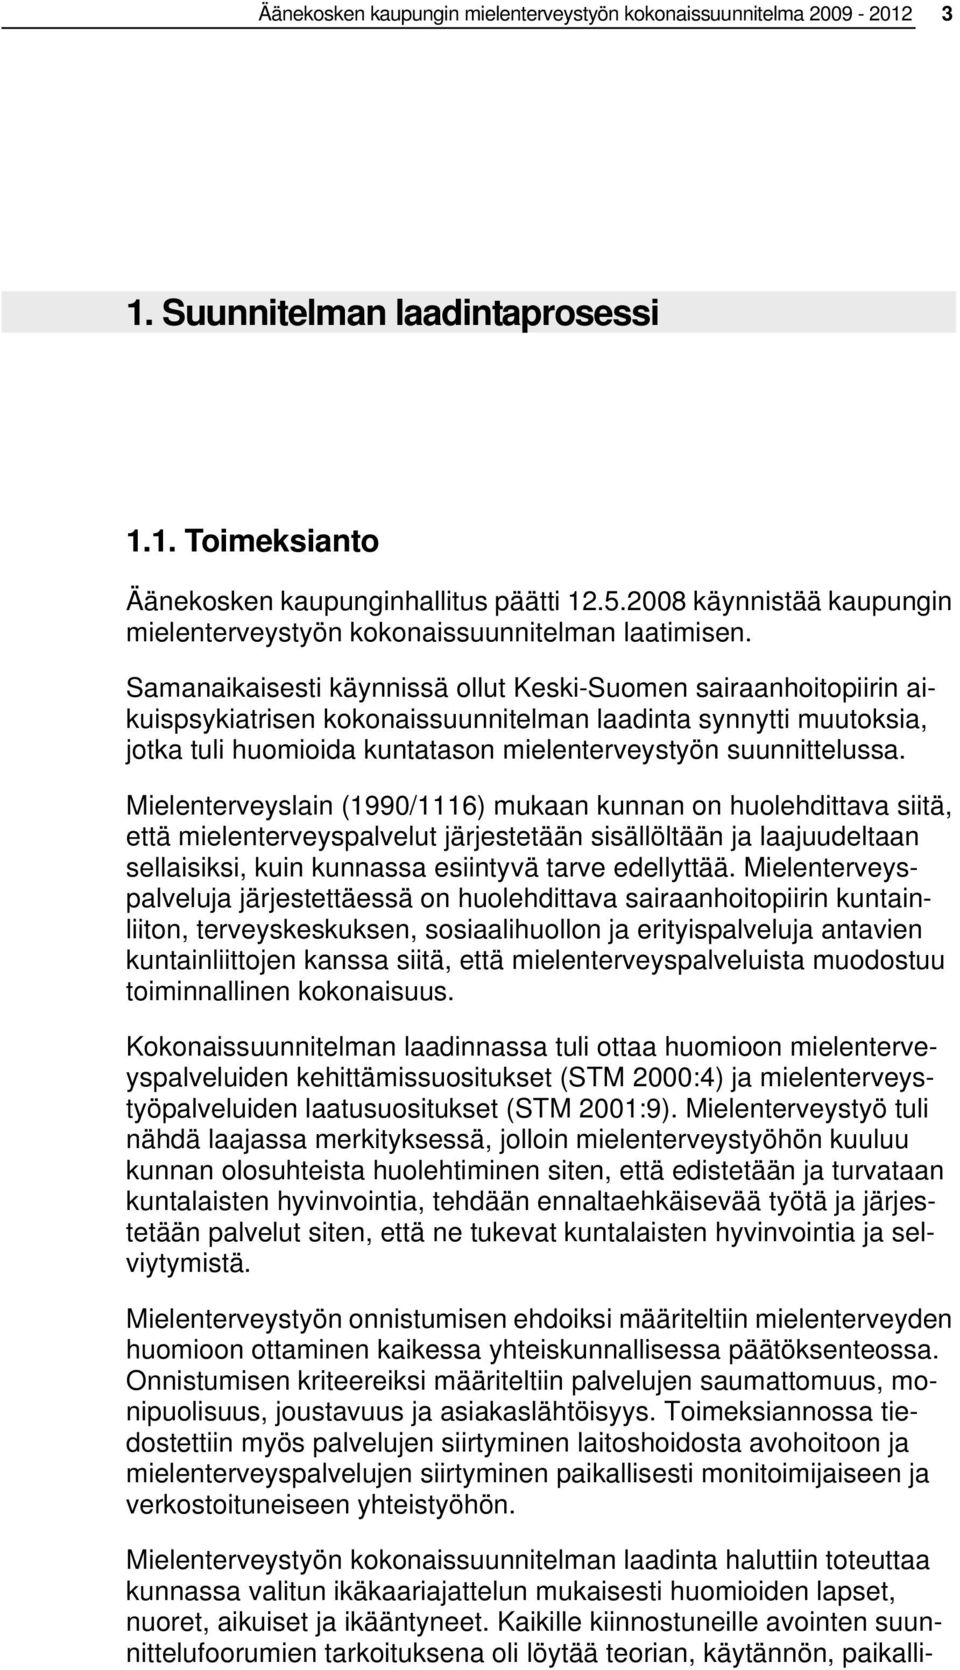 Samanaikaisesti käynnissä ollut Keski-Suomen sairaanhoitopiirin aikuispsykiatrisen kokonaissuunnitelman laadinta synnytti muutoksia, jotka tuli huomioida kuntatason mielenterveystyön suunnittelussa.